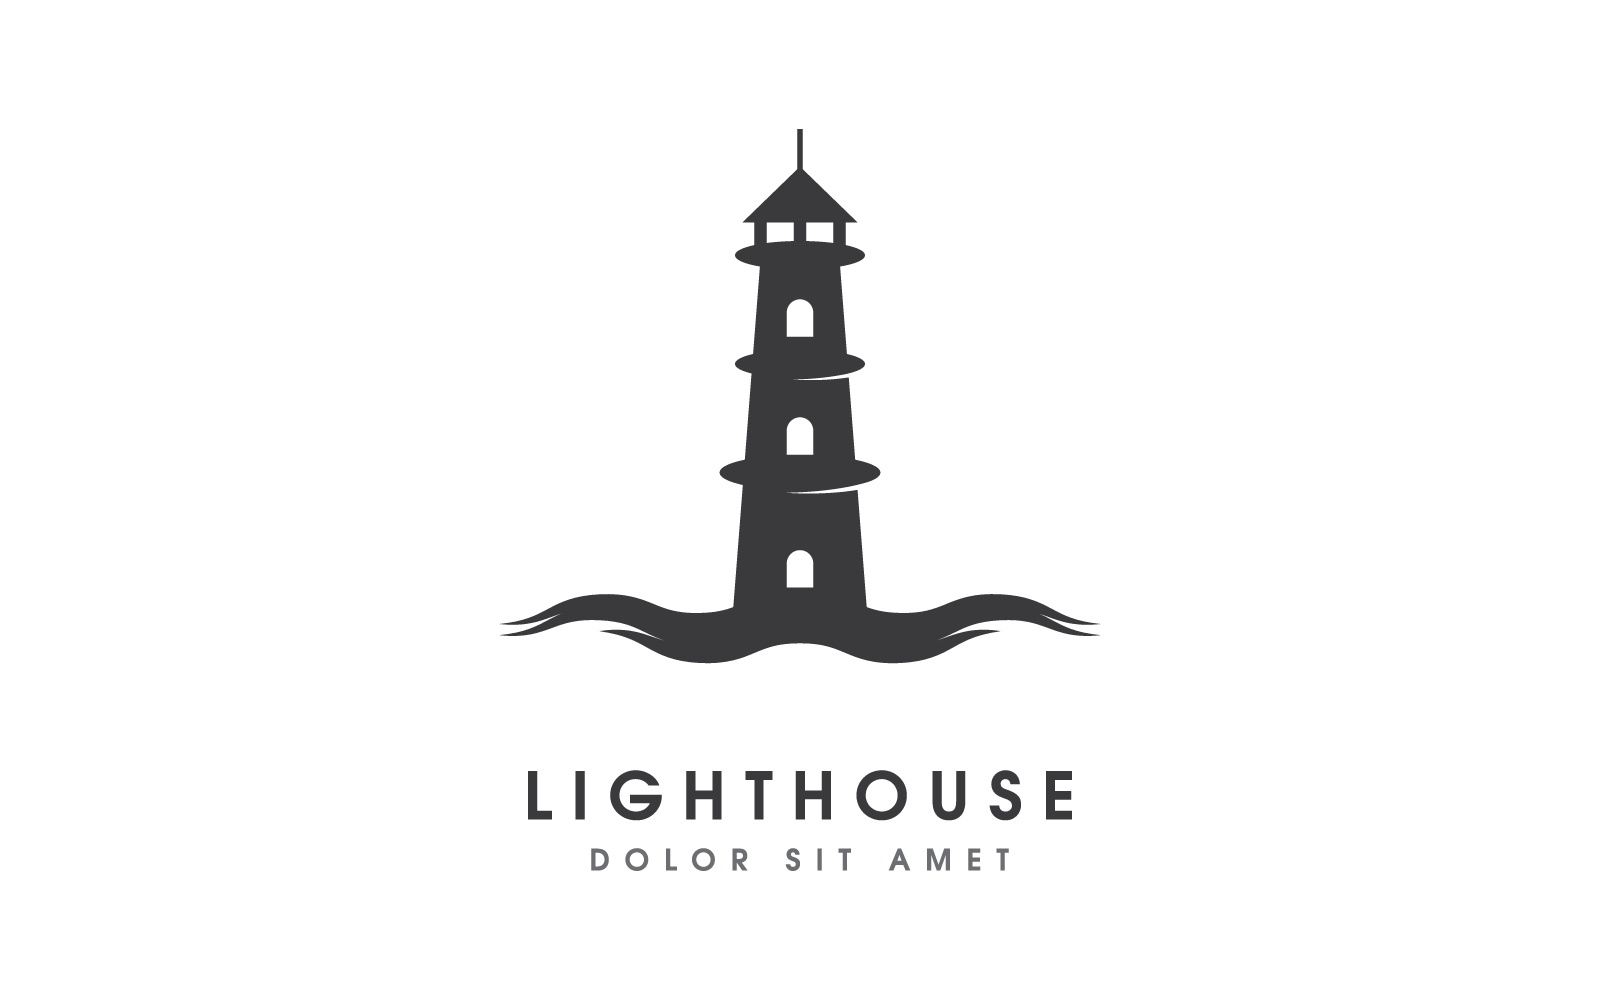 Plantilla de ilustración de diseño vectorial del logotipo de la casa ligera